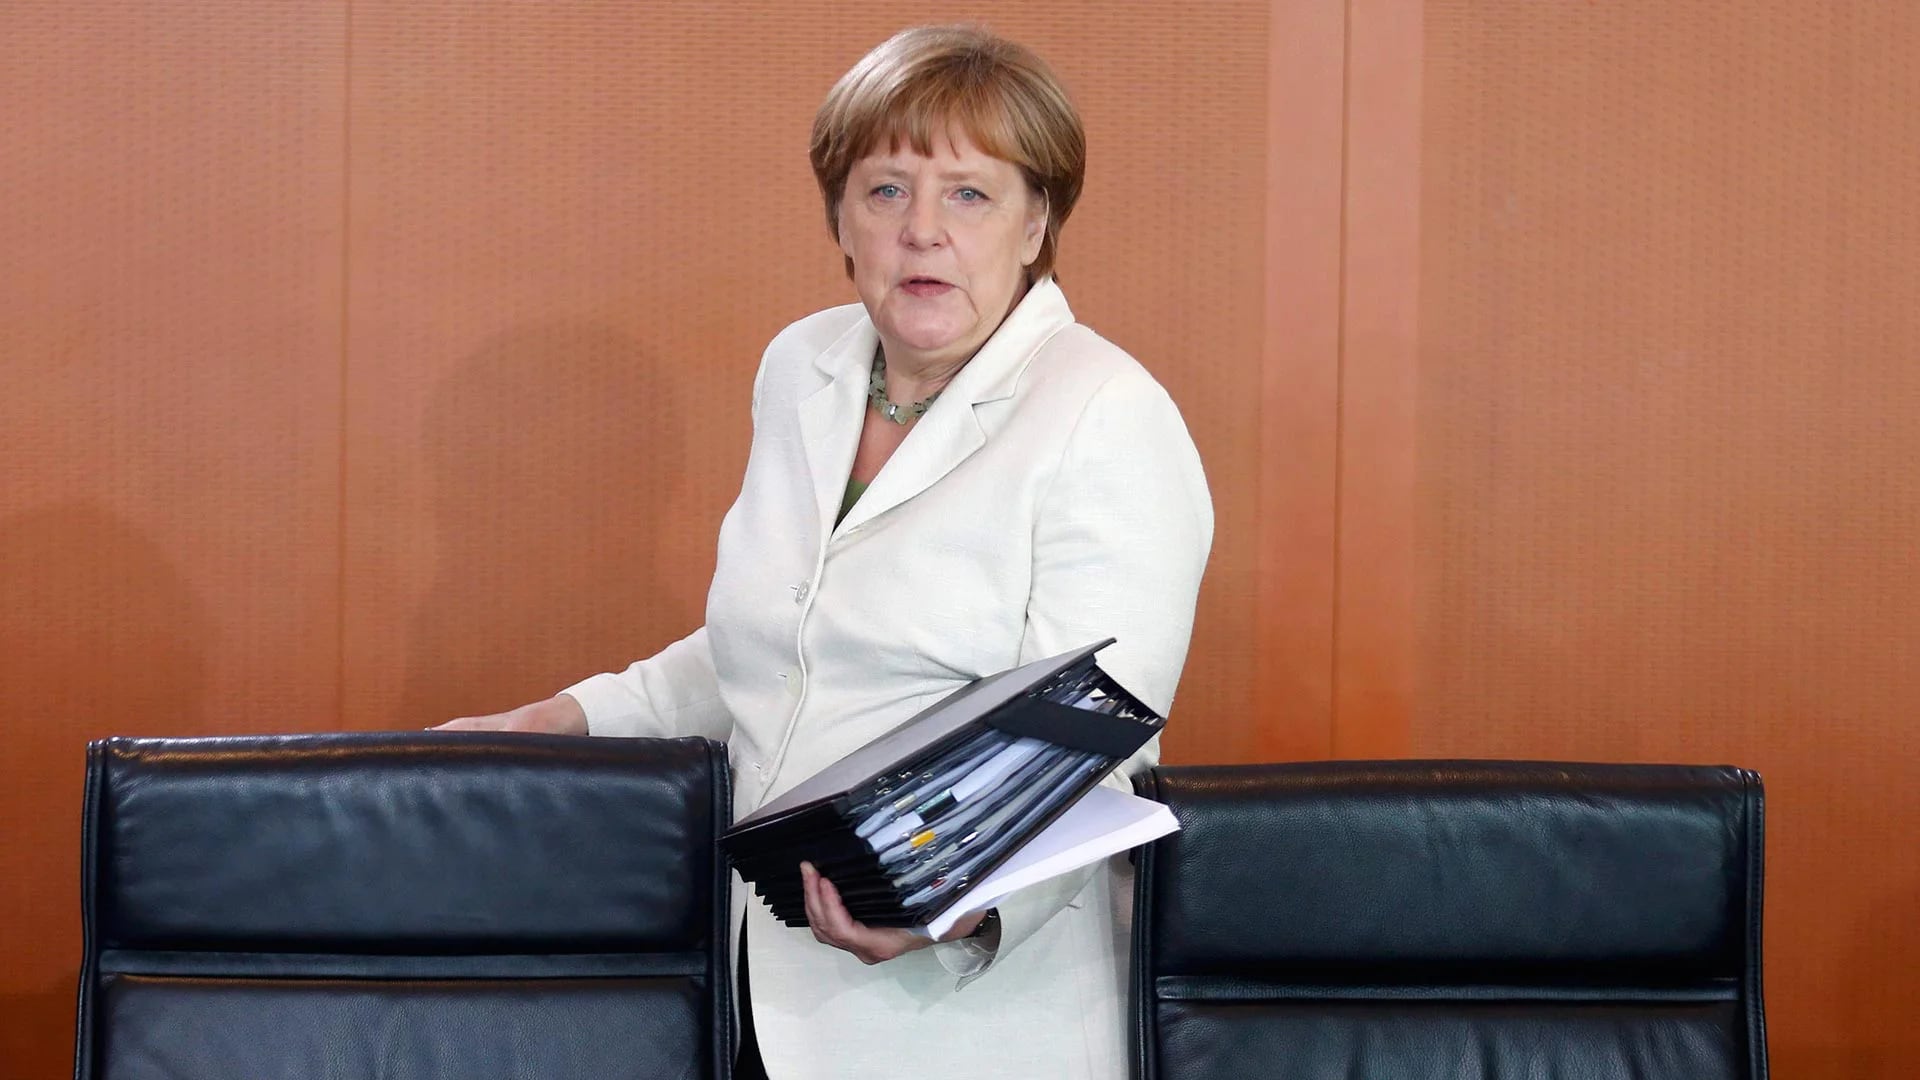 2- Angela Merkel es la canciller alemana y una de las mujeres más poderosas del mundo